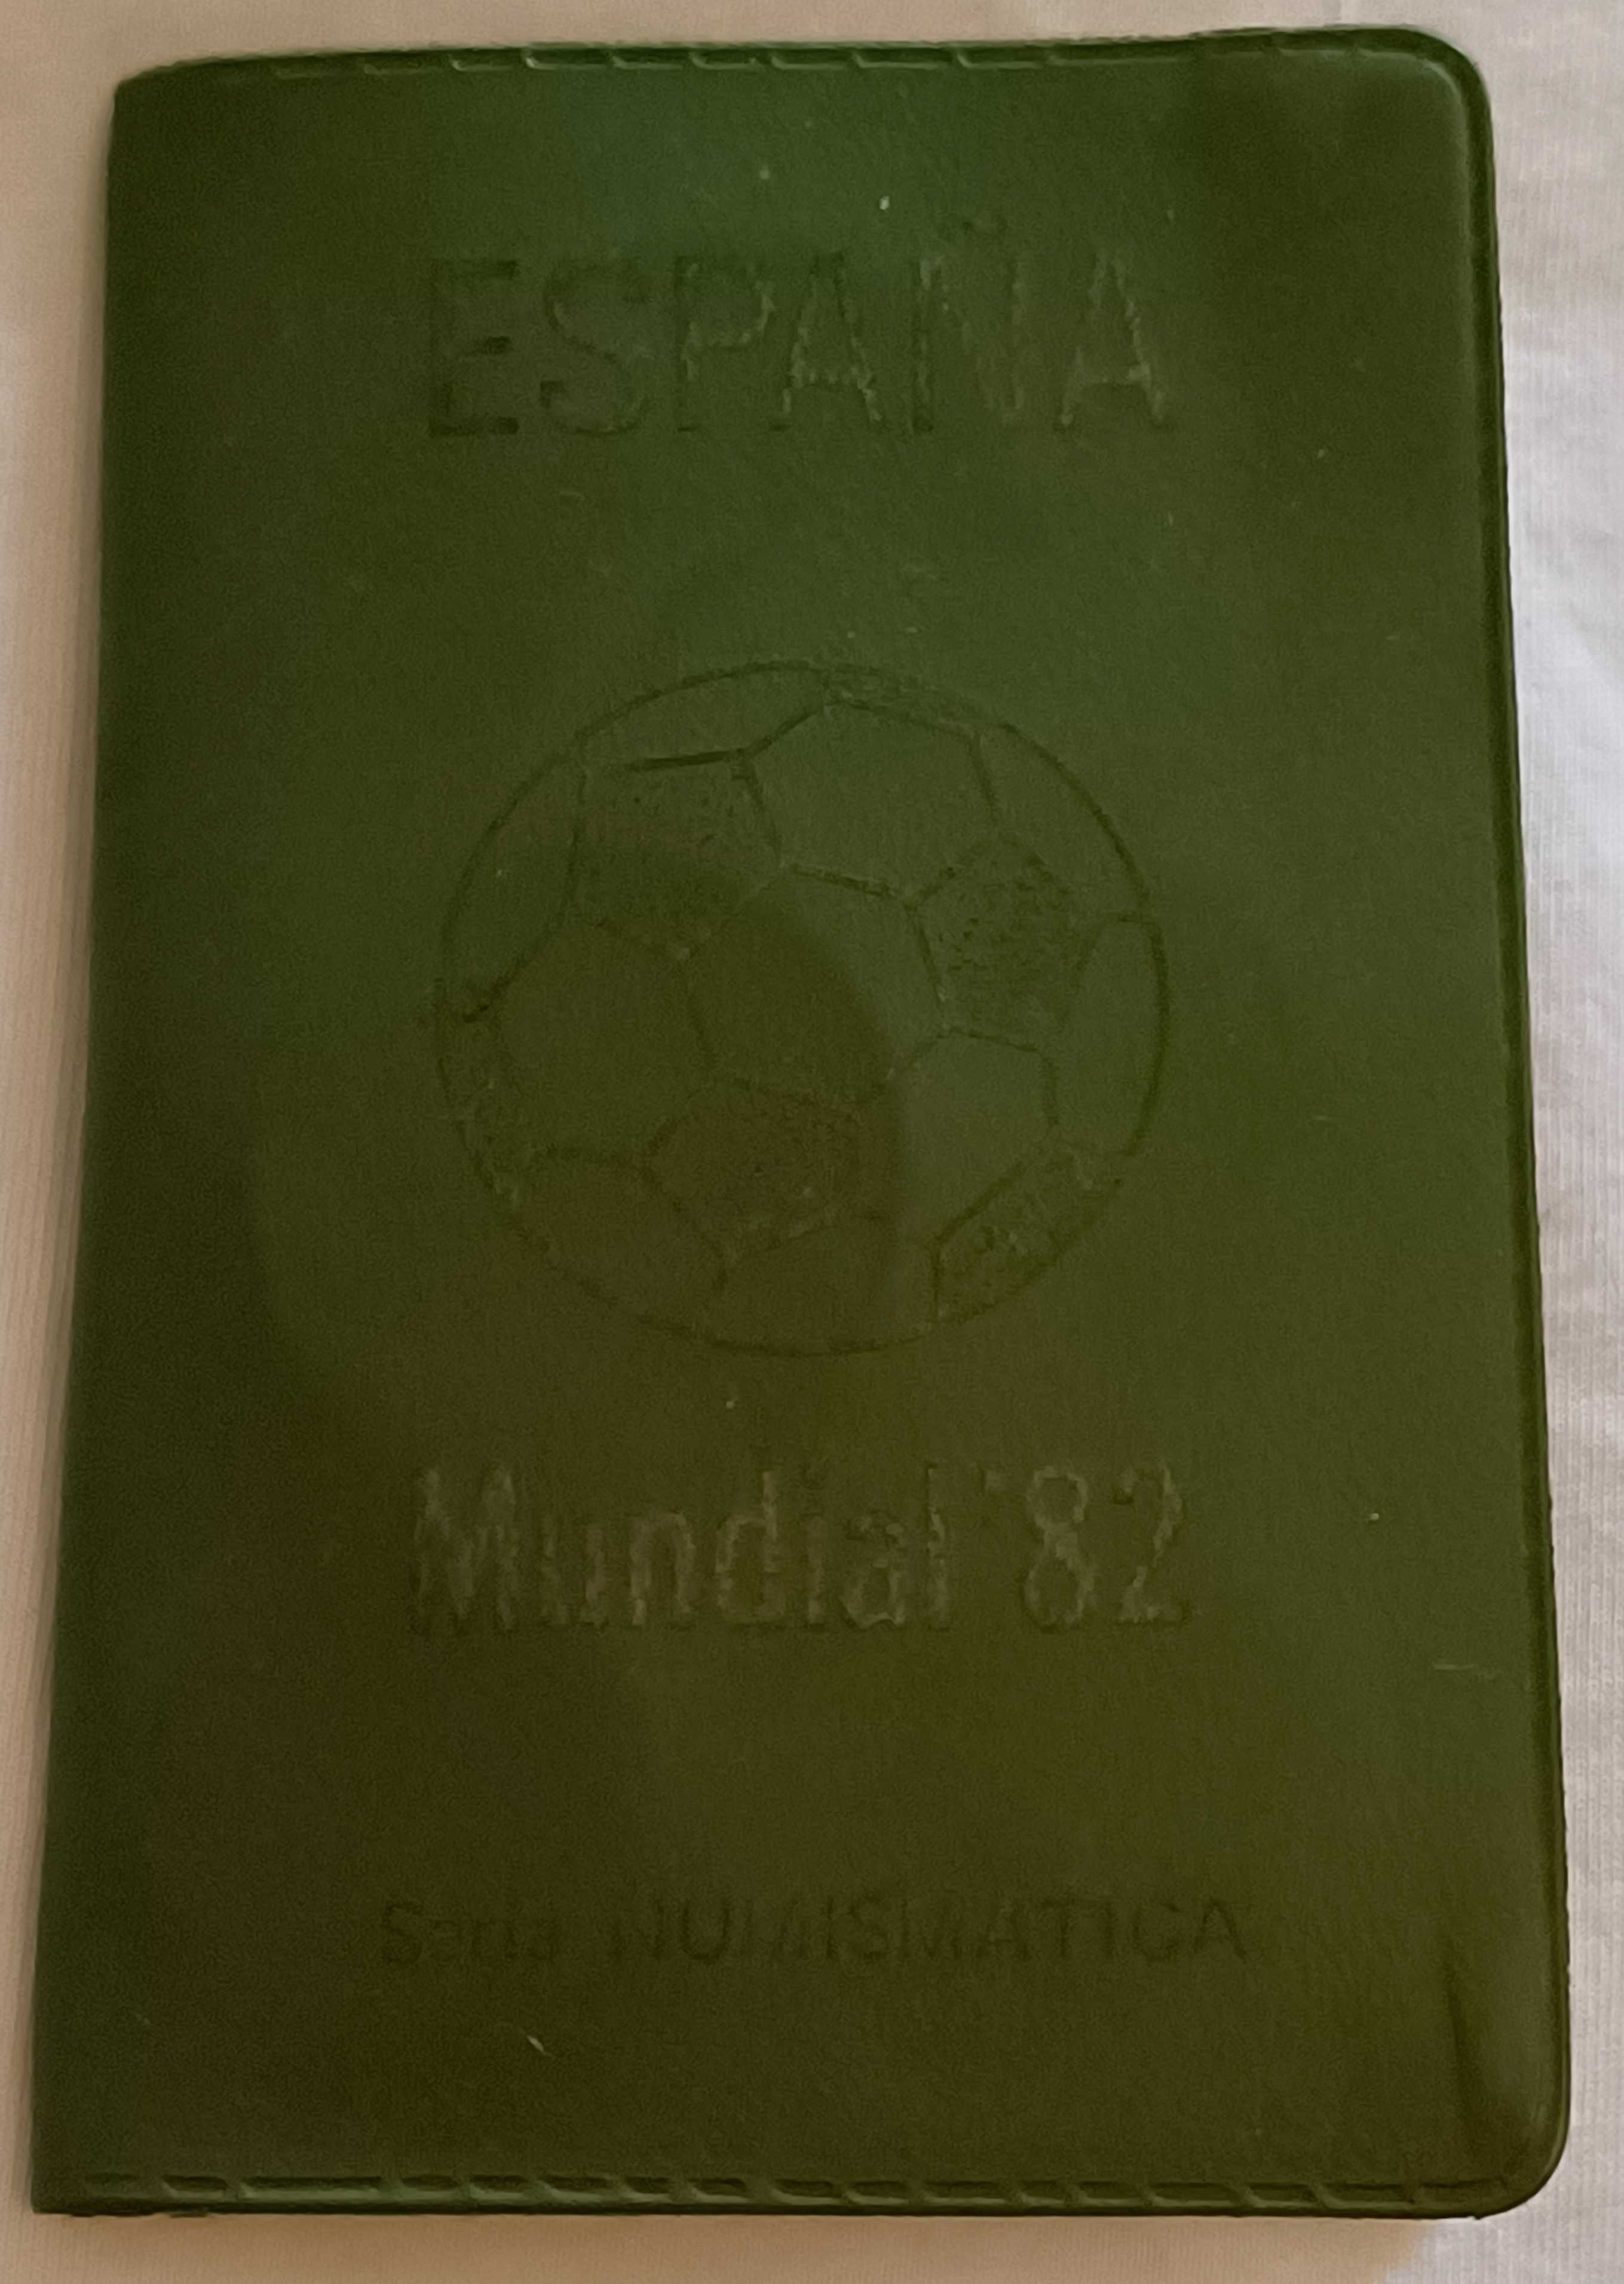 Moedas comemorativas do Mundial de Futebol de 1982 em Espanha